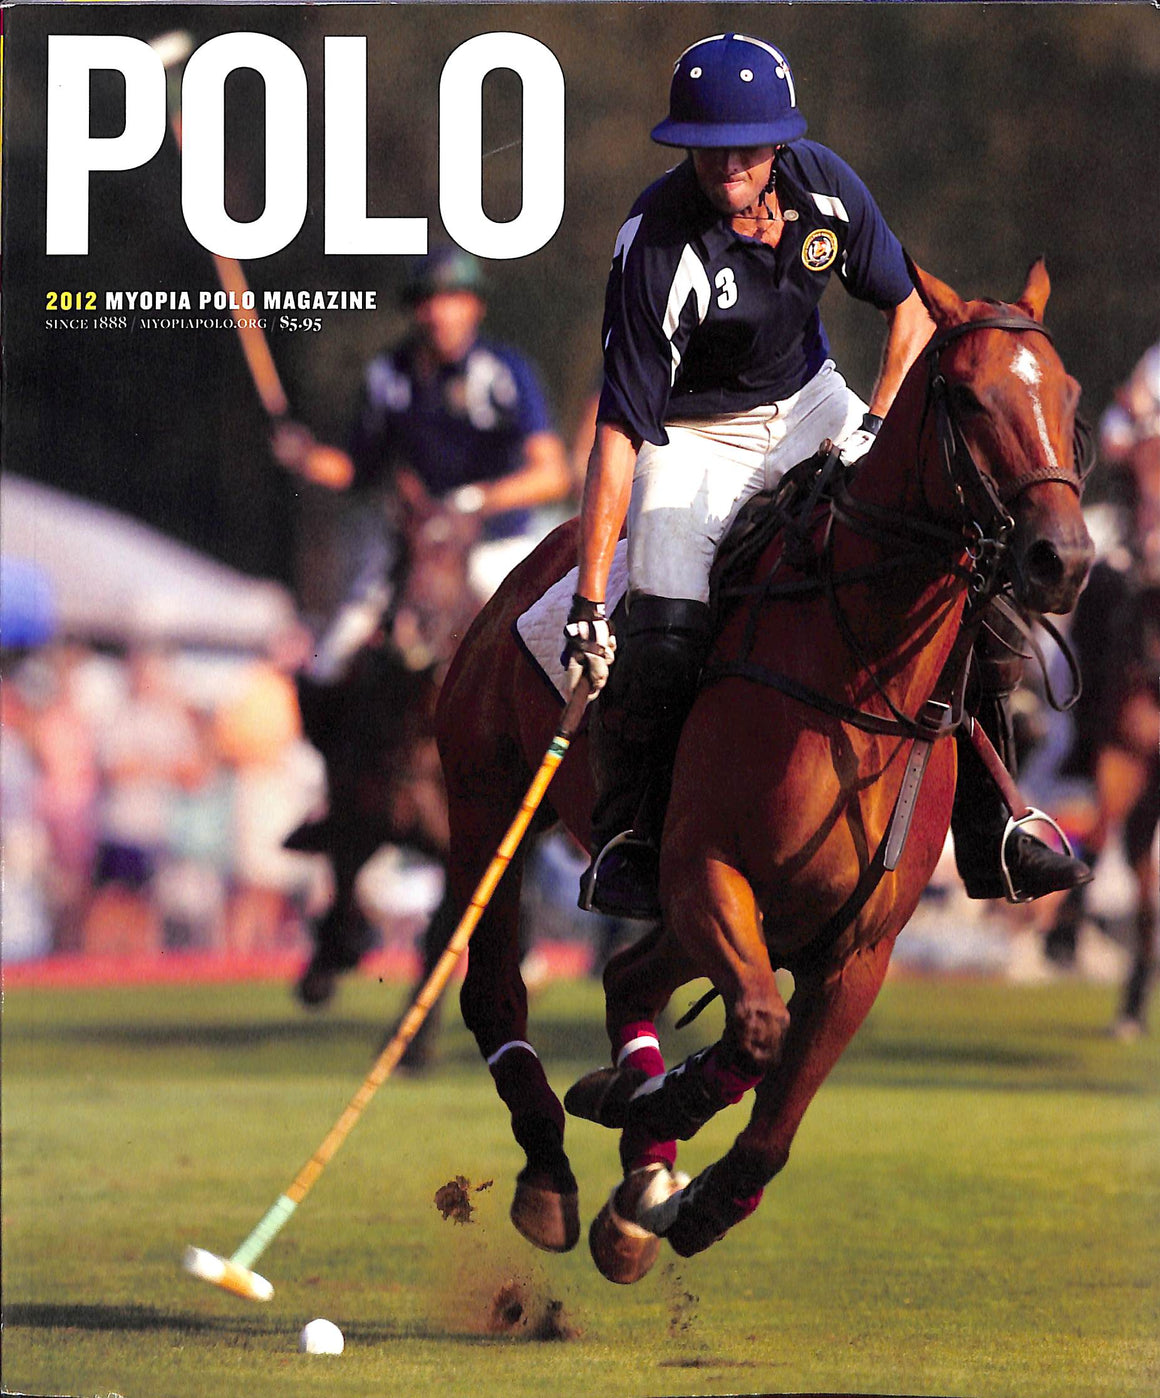 "Polo: 2012 Myopia Polo Magazine"